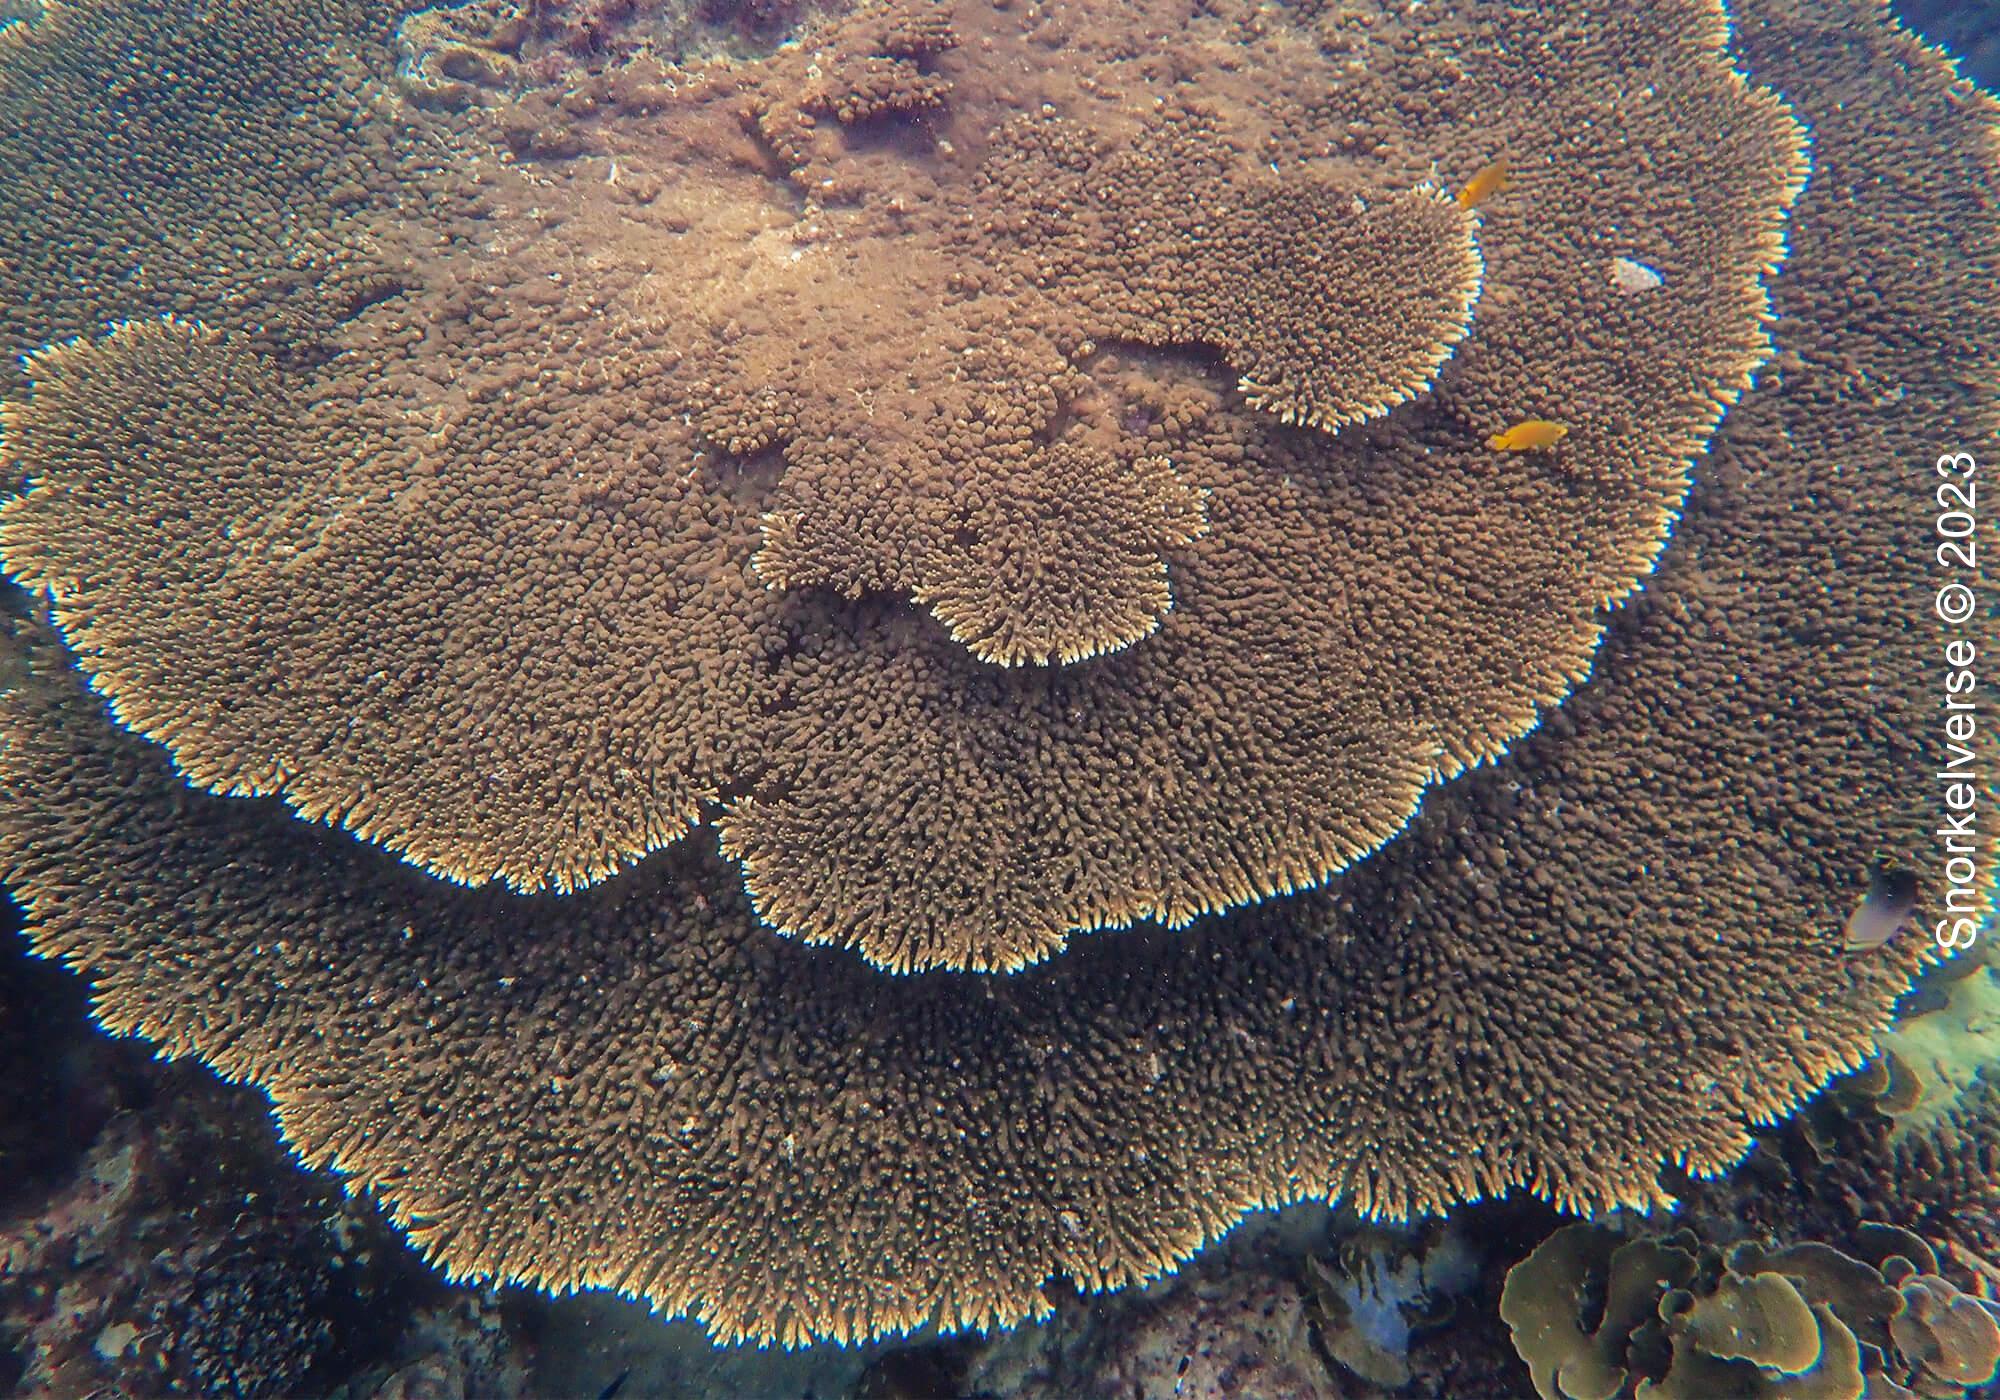 Table Coral At Loh Lana Bay